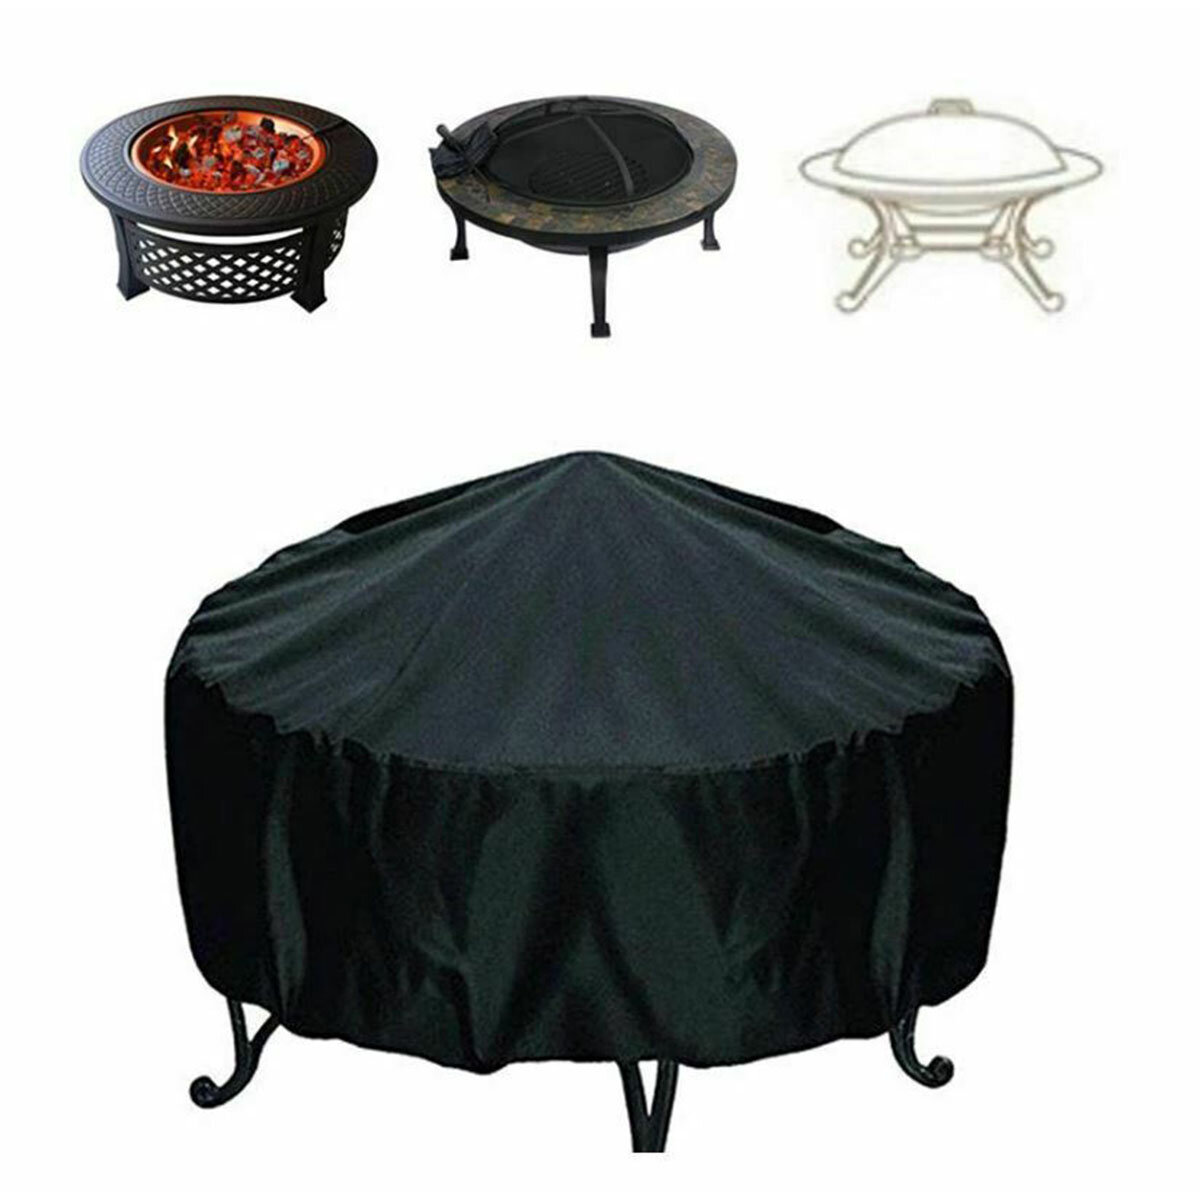 Couverture de gril de barbecue de jardin extérieur étanche à la pluie antipoussière UV couverture de gril ronde résistante housse de protection de table ronde